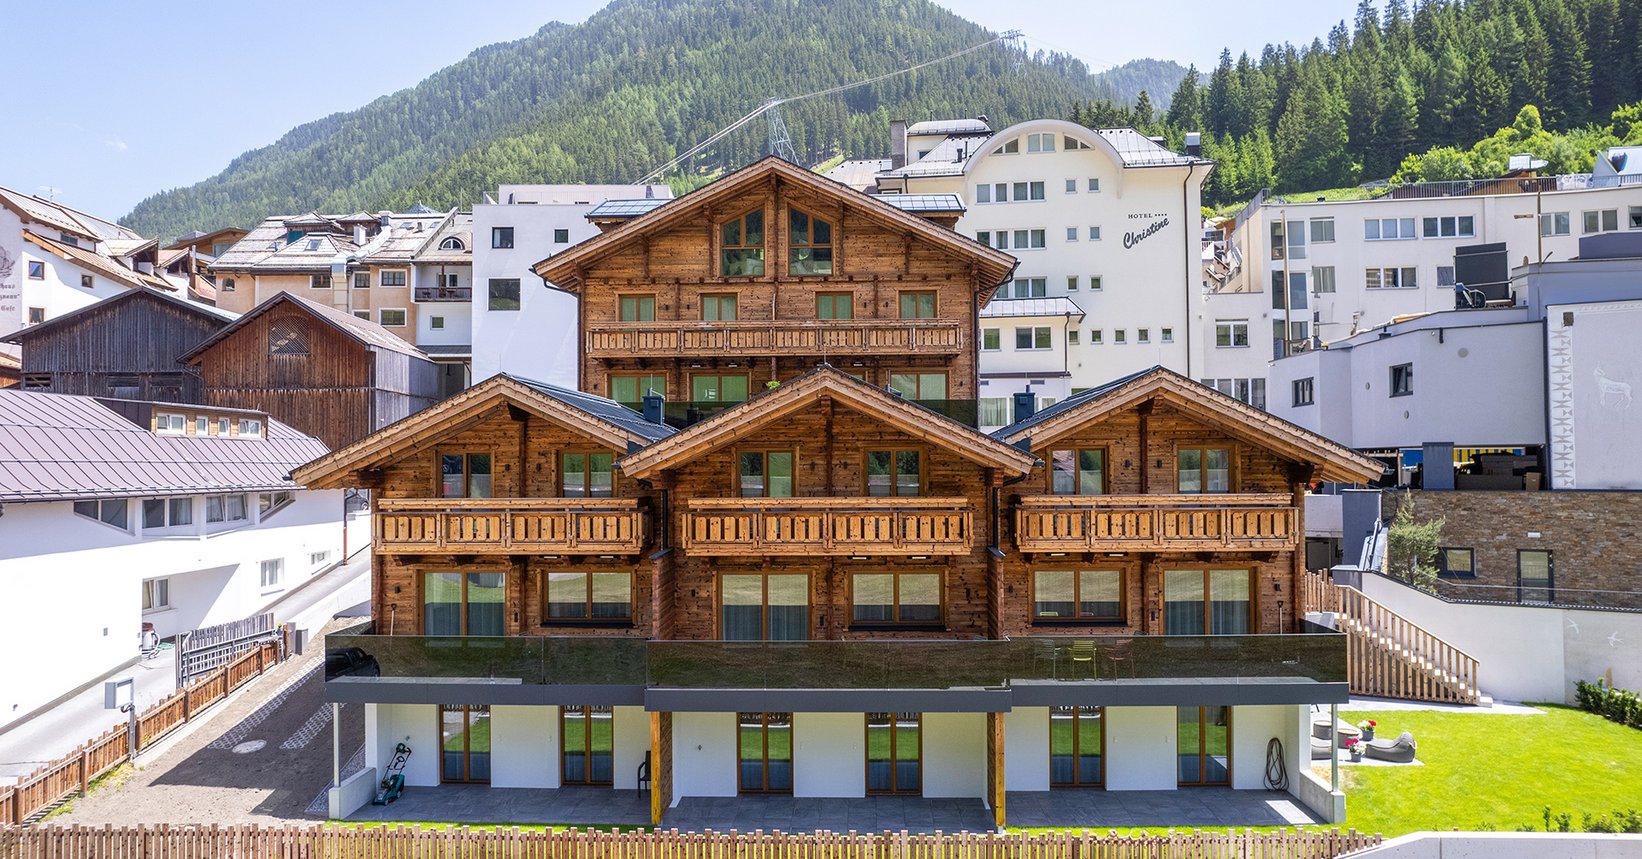 Holzchalet - Luf Lodges inmitten von Ischgl mit Bergkulisse von Alpen im Hintergrund